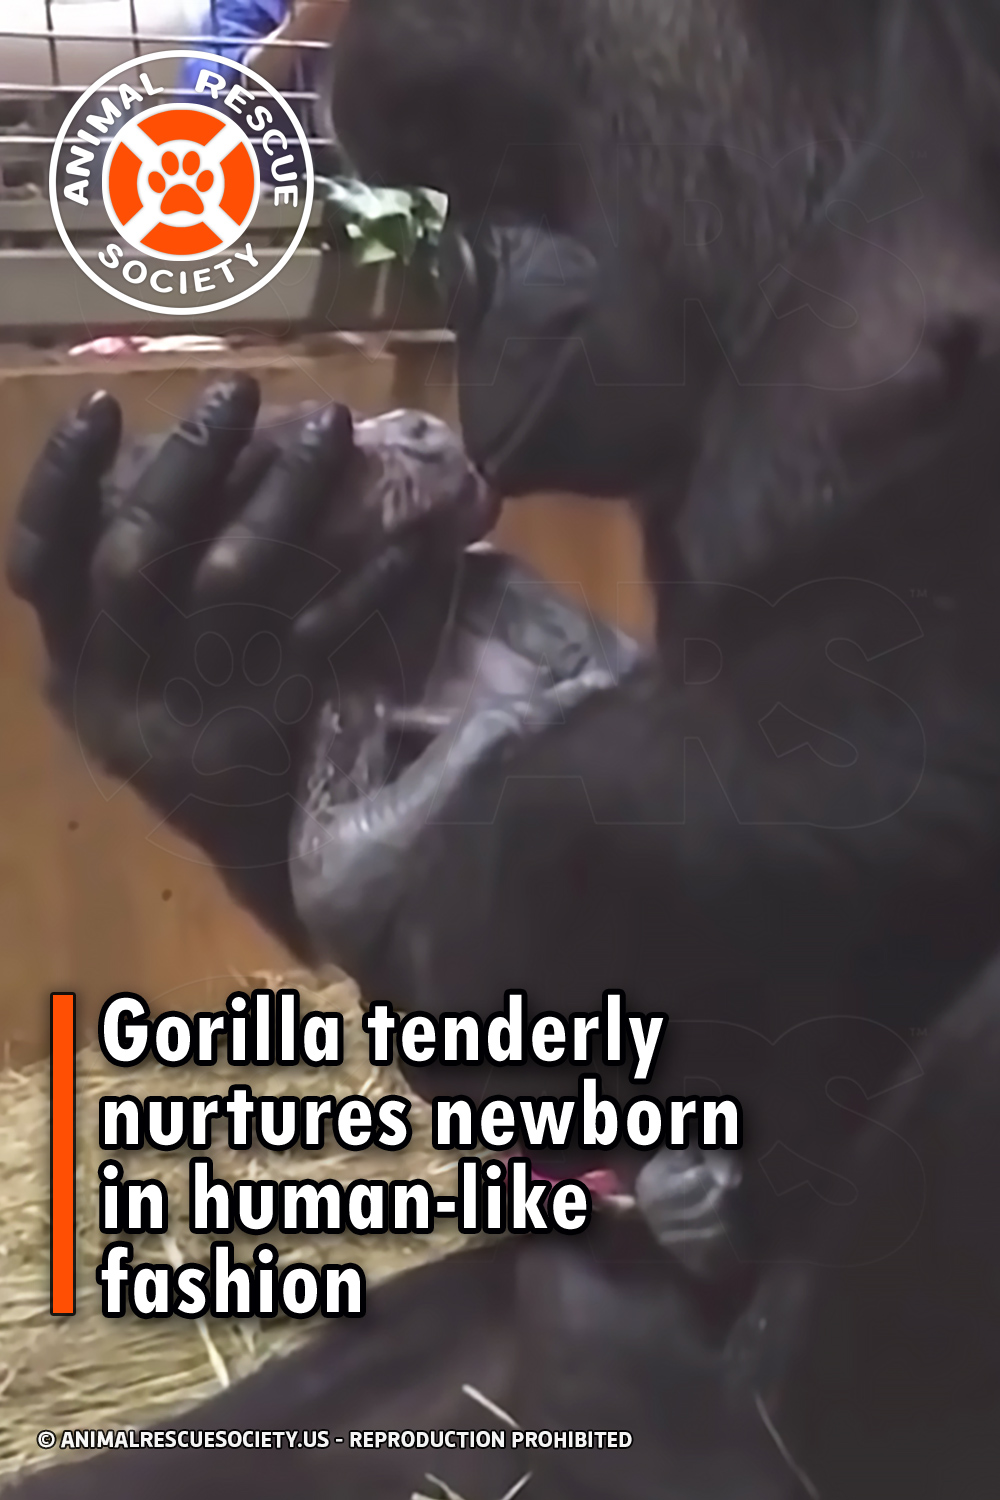 Gorilla tenderly nurtures newborn in human-like fashion